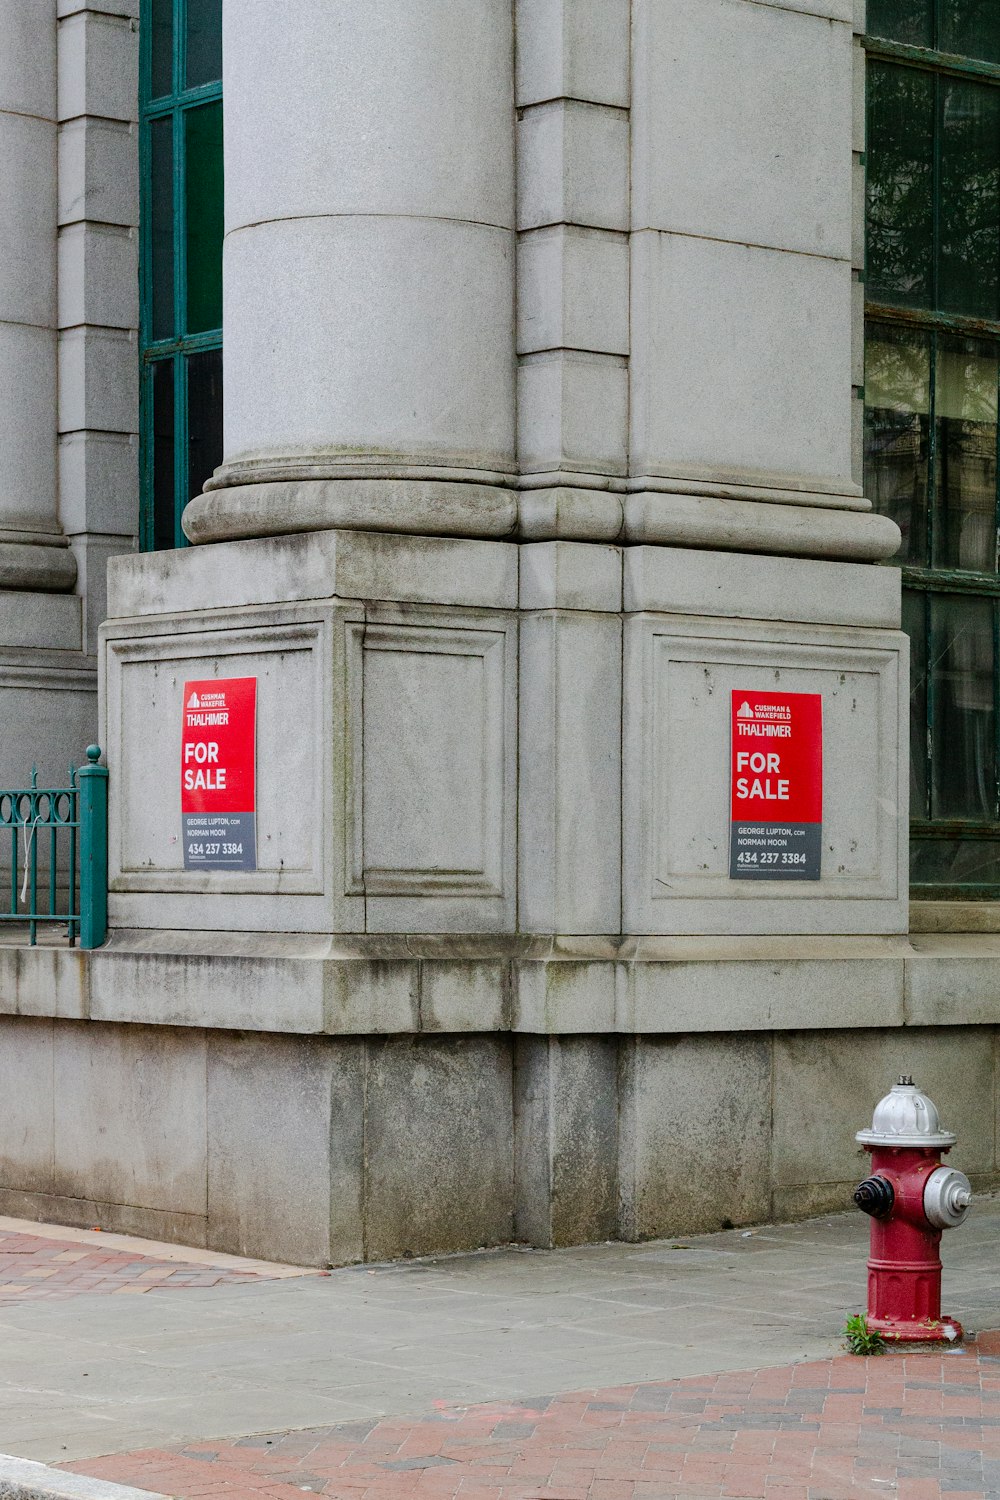 Roter Hydrant in der Nähe der grauen Betonwand